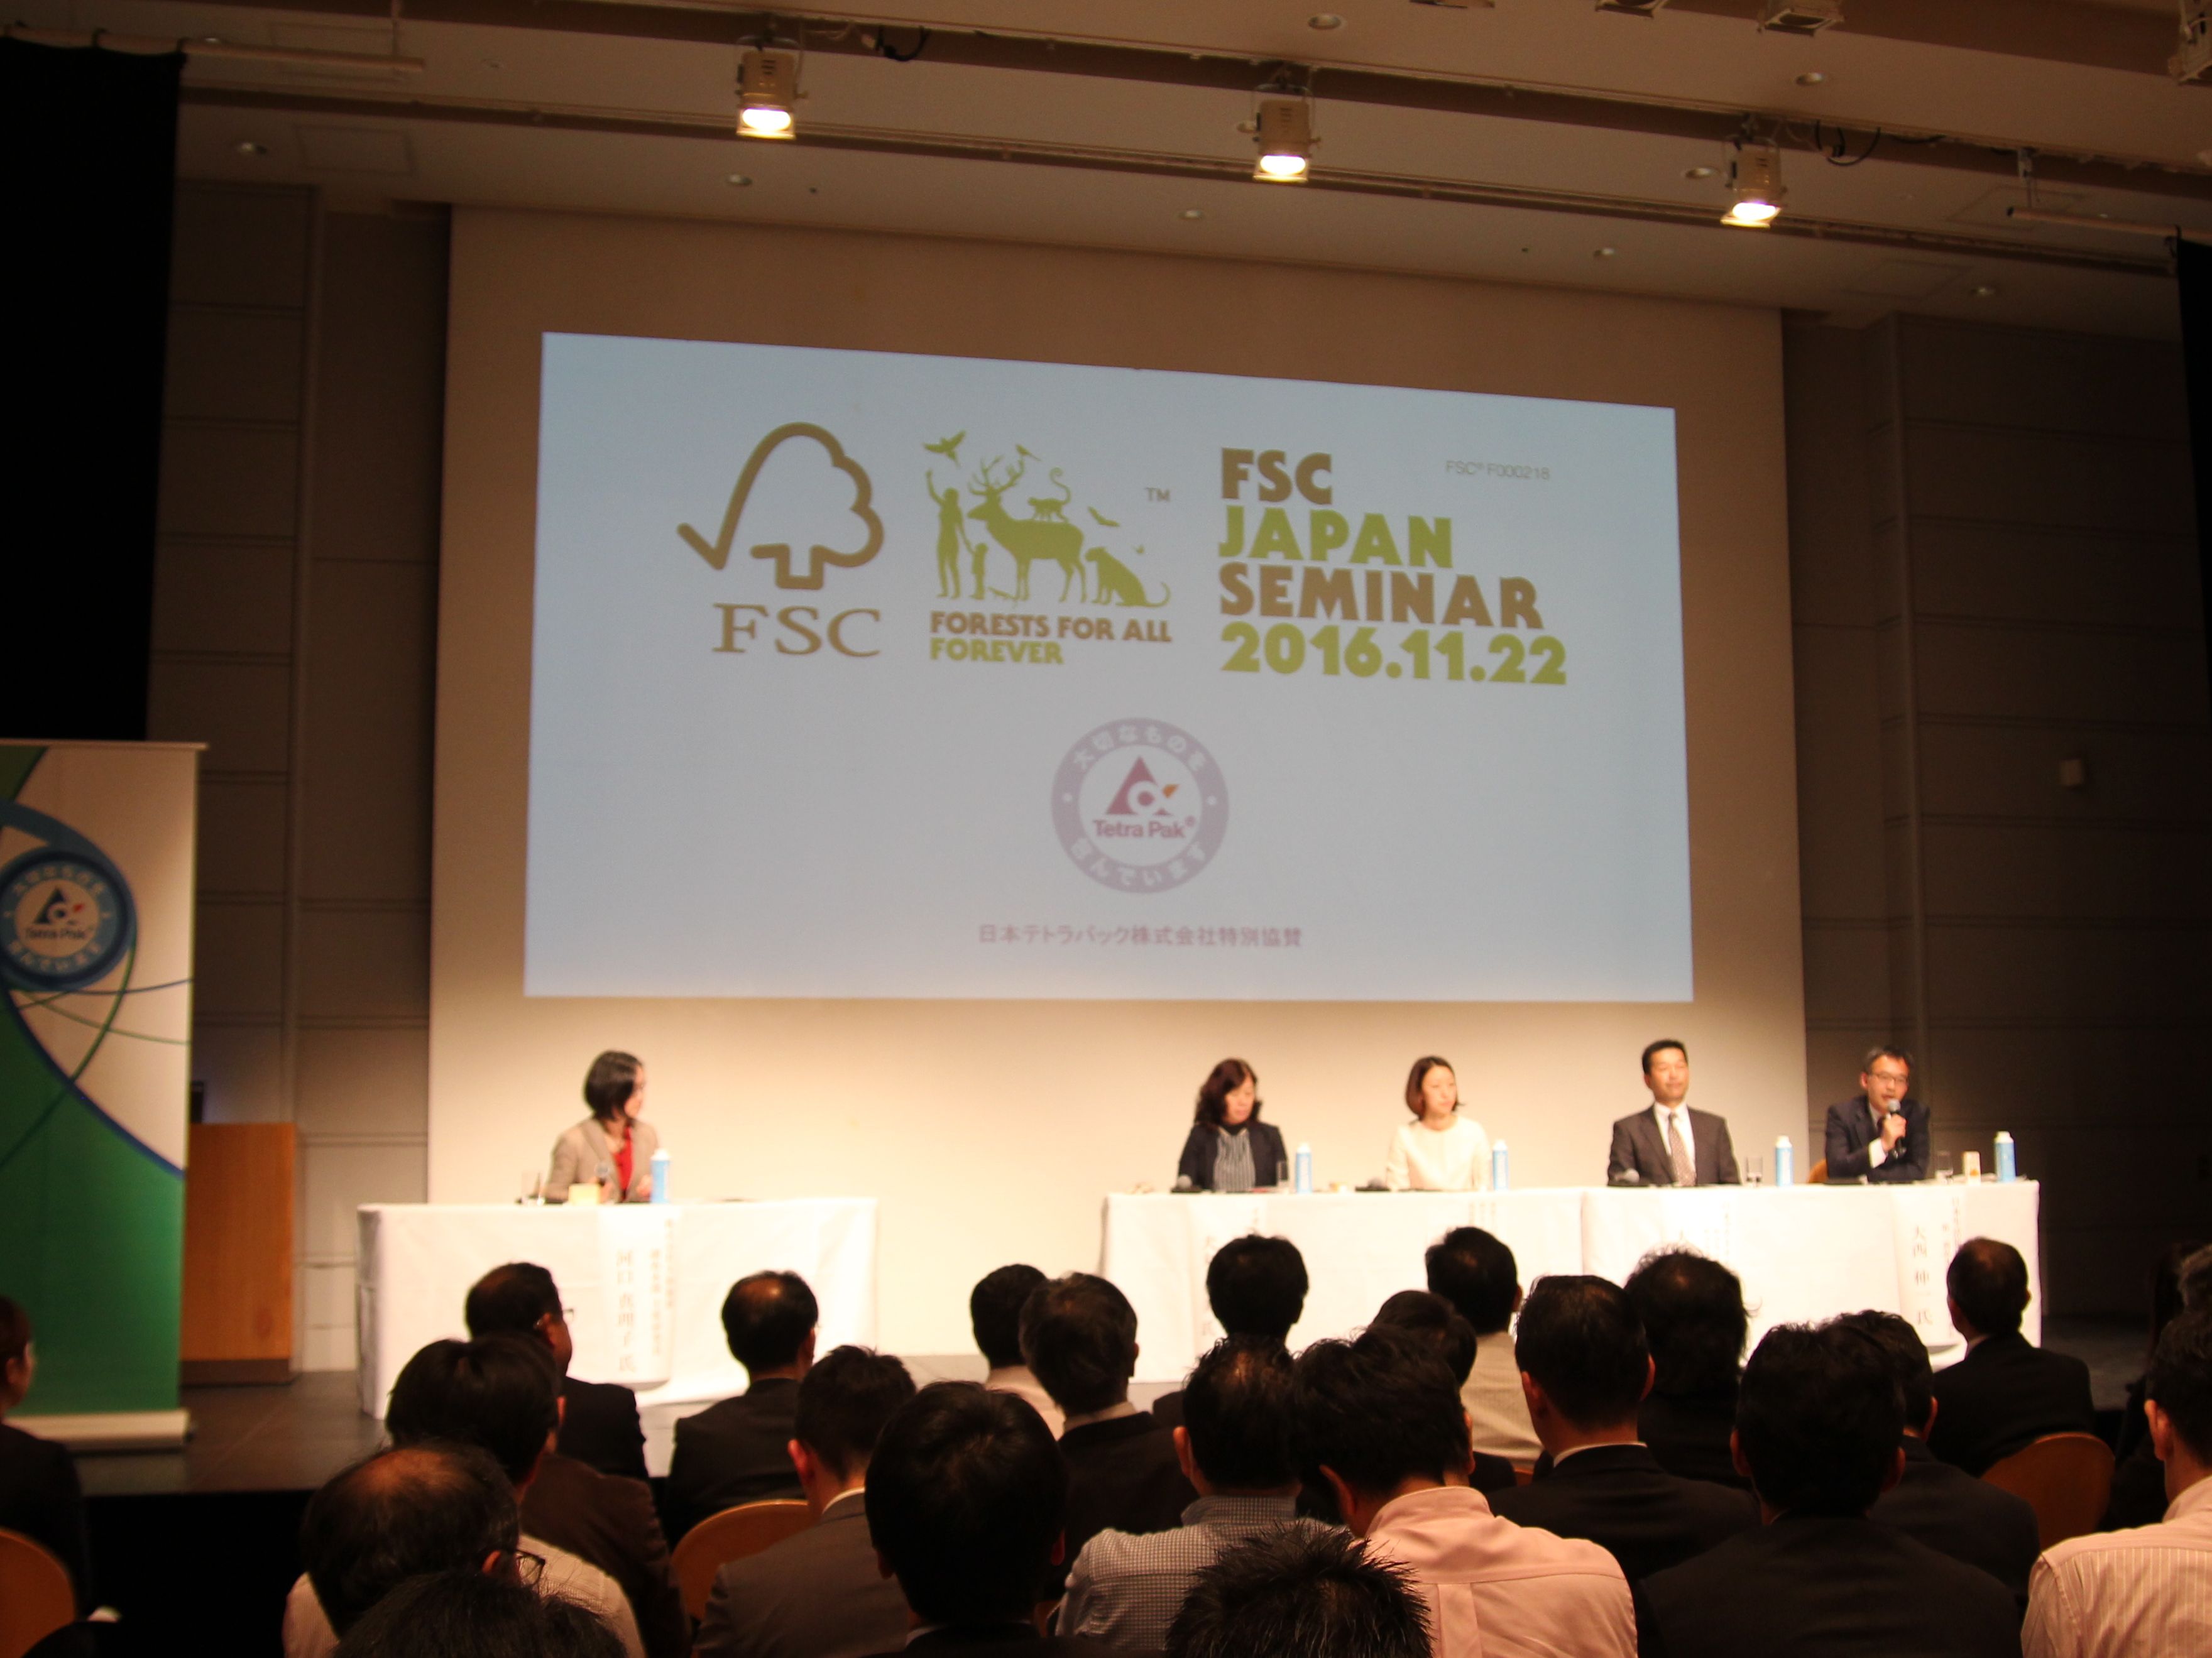 JCCU took part in the FSC Japan Seminar